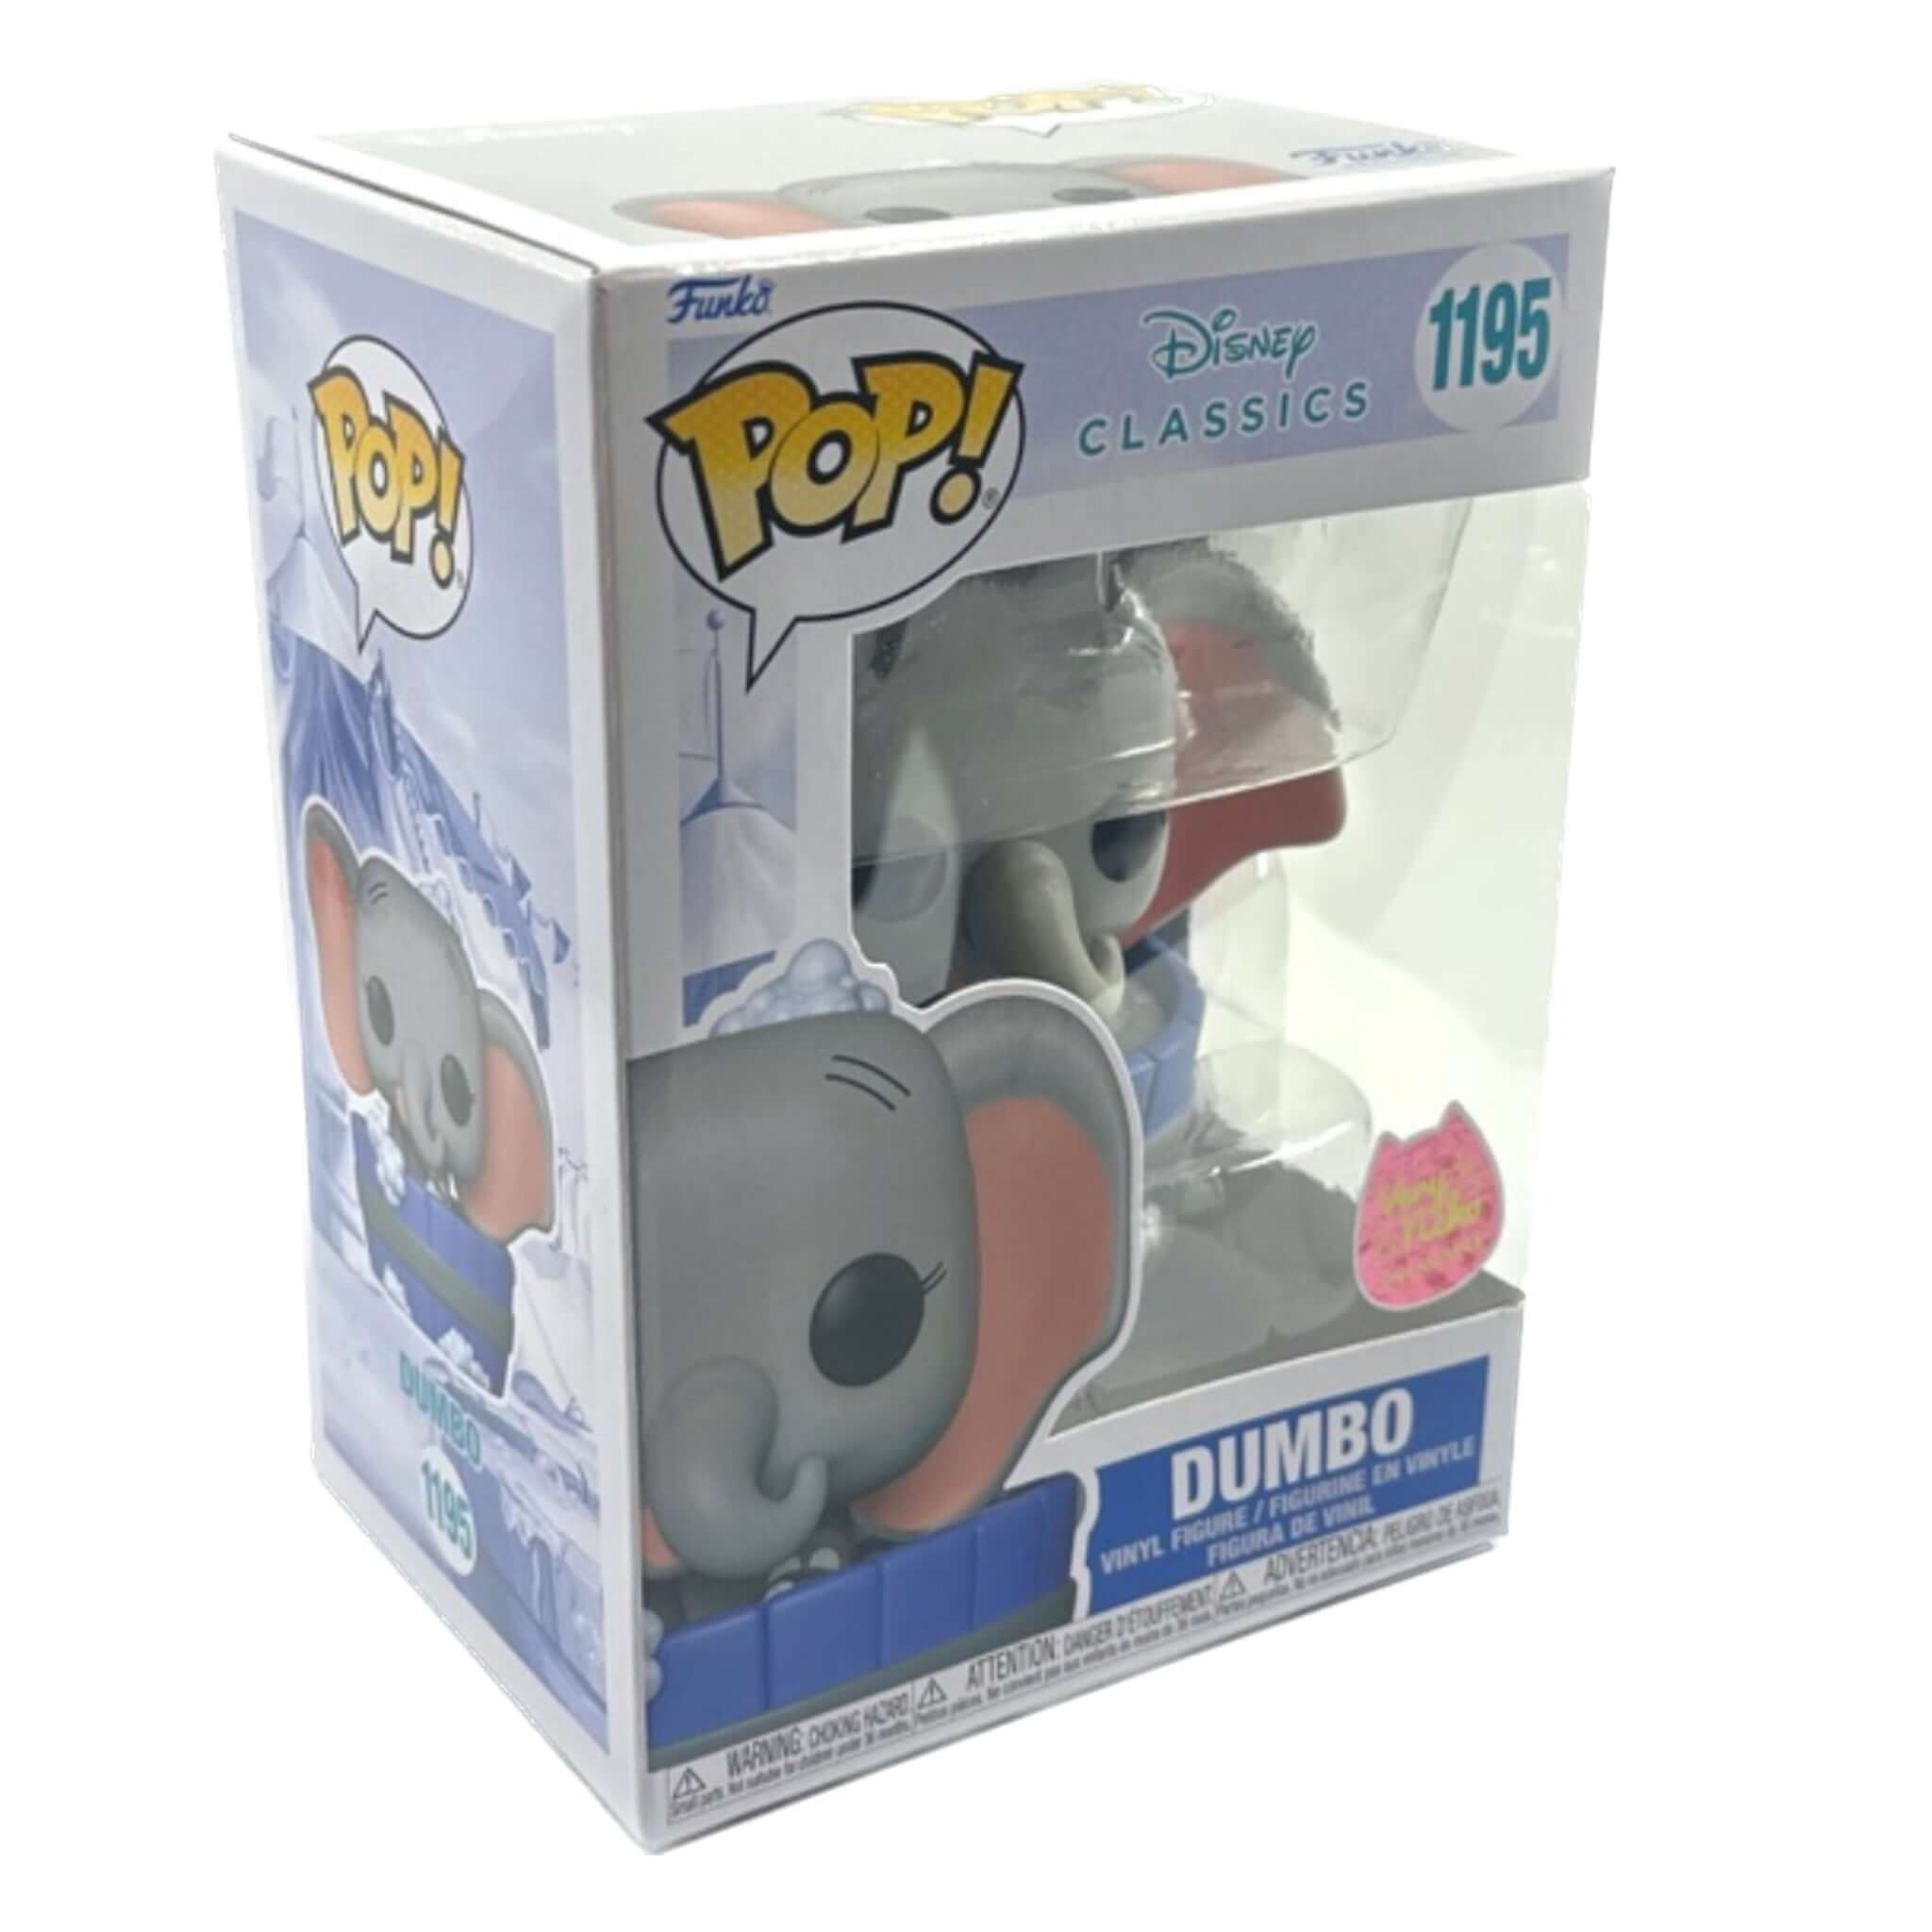 Pop! EXCLUSIVE NEKO VERY Dumbo Funko